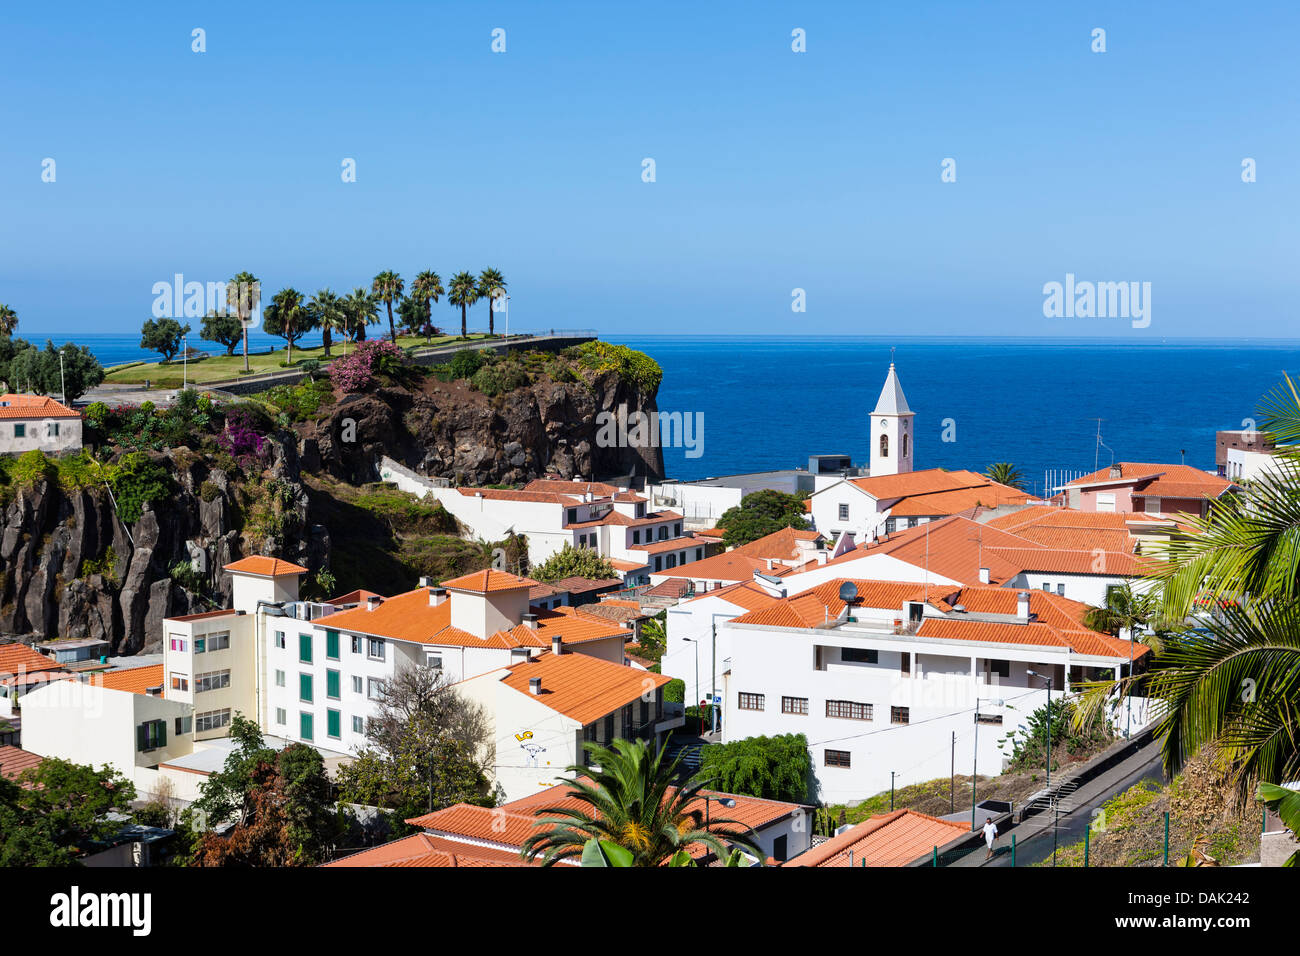 Portugal, View of houses at Camara de Lobos Stock Photo